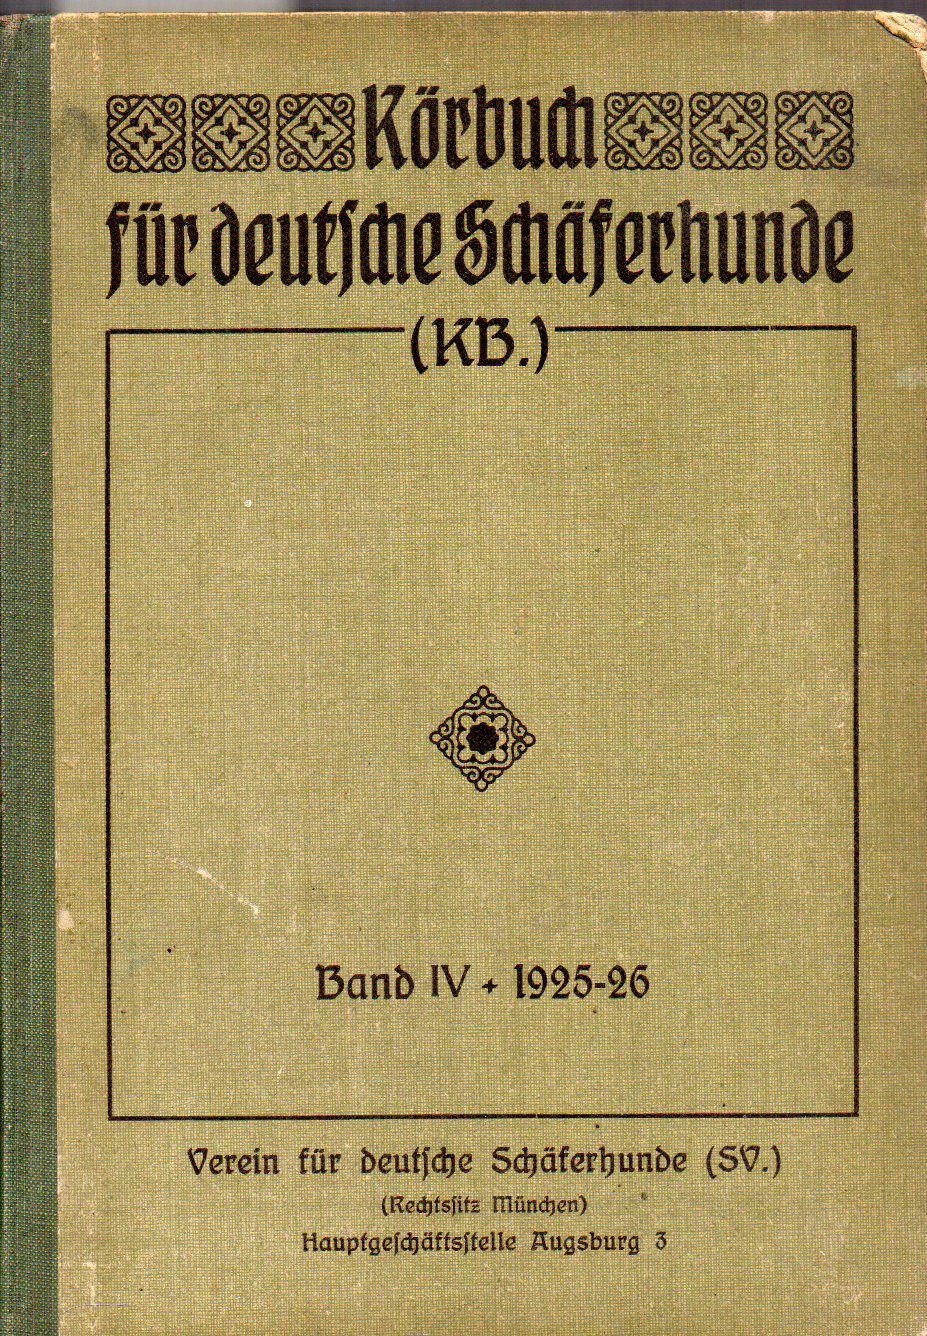 Verein für deutsche Schäferhunde (SV)  Körbuch für deutsche Schäferhunde Band IV Ankörung 1925 